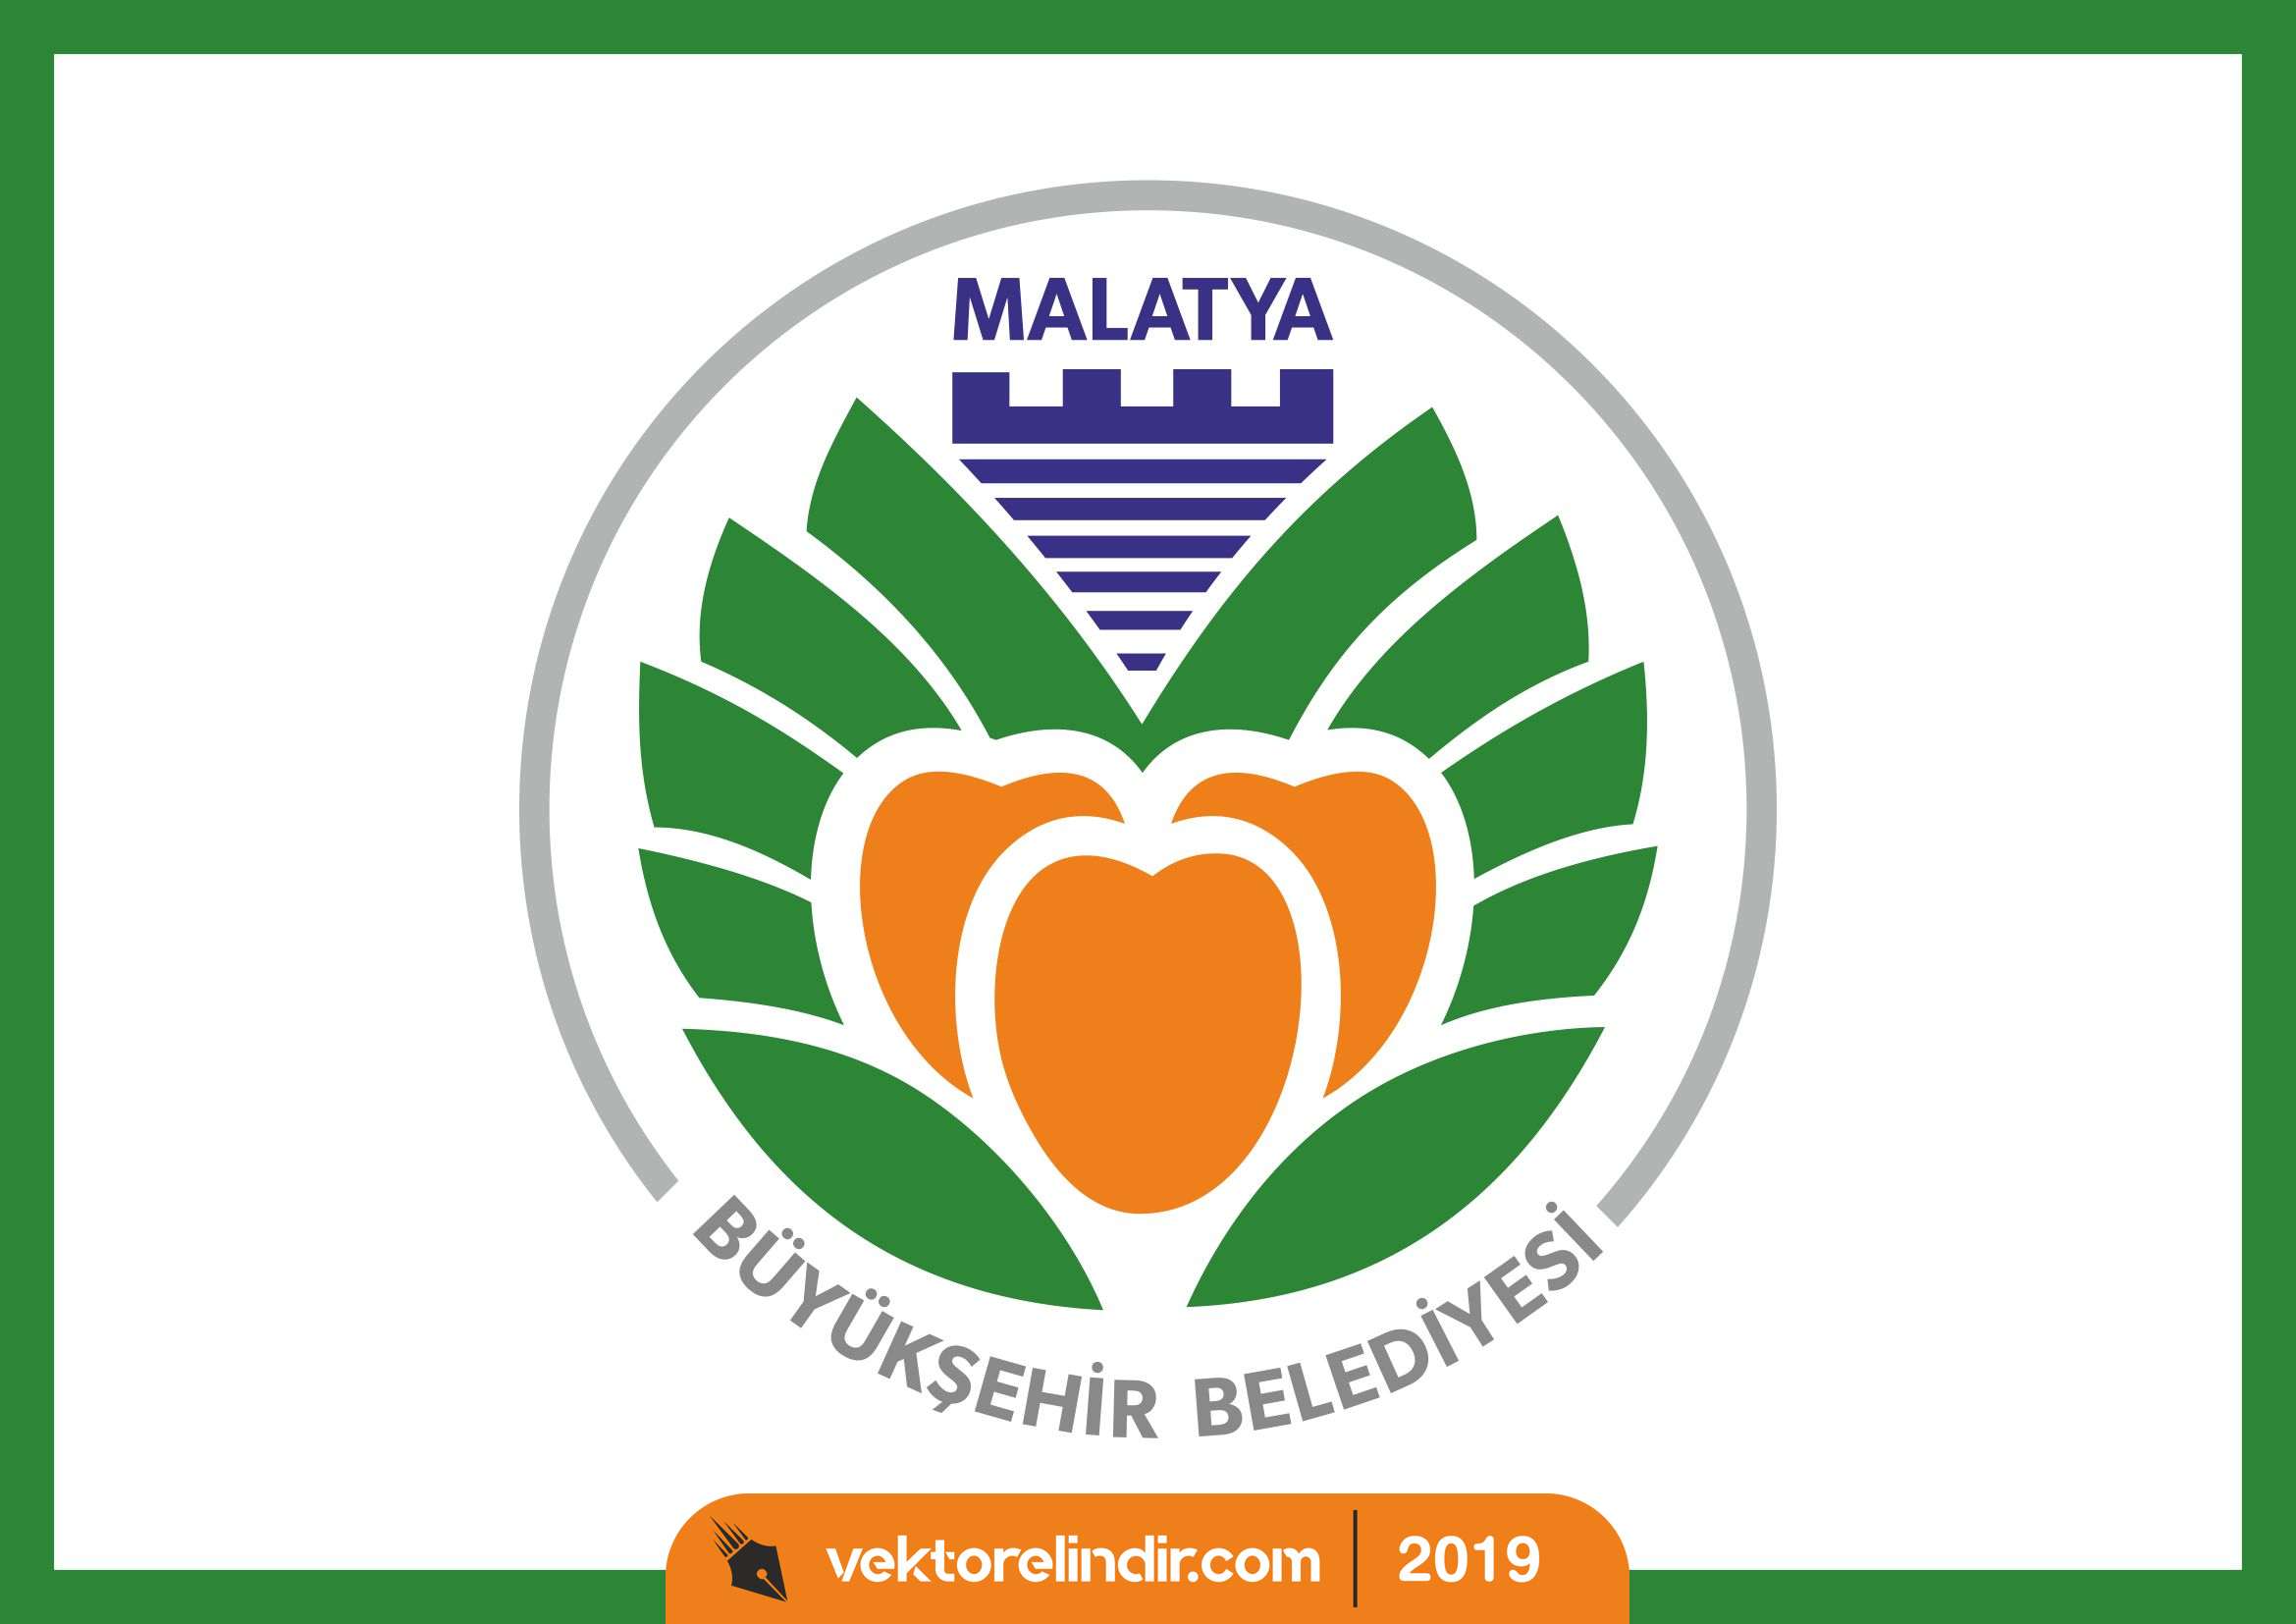 Malatya Büyükşehir Belediyesi Logo, Amblem